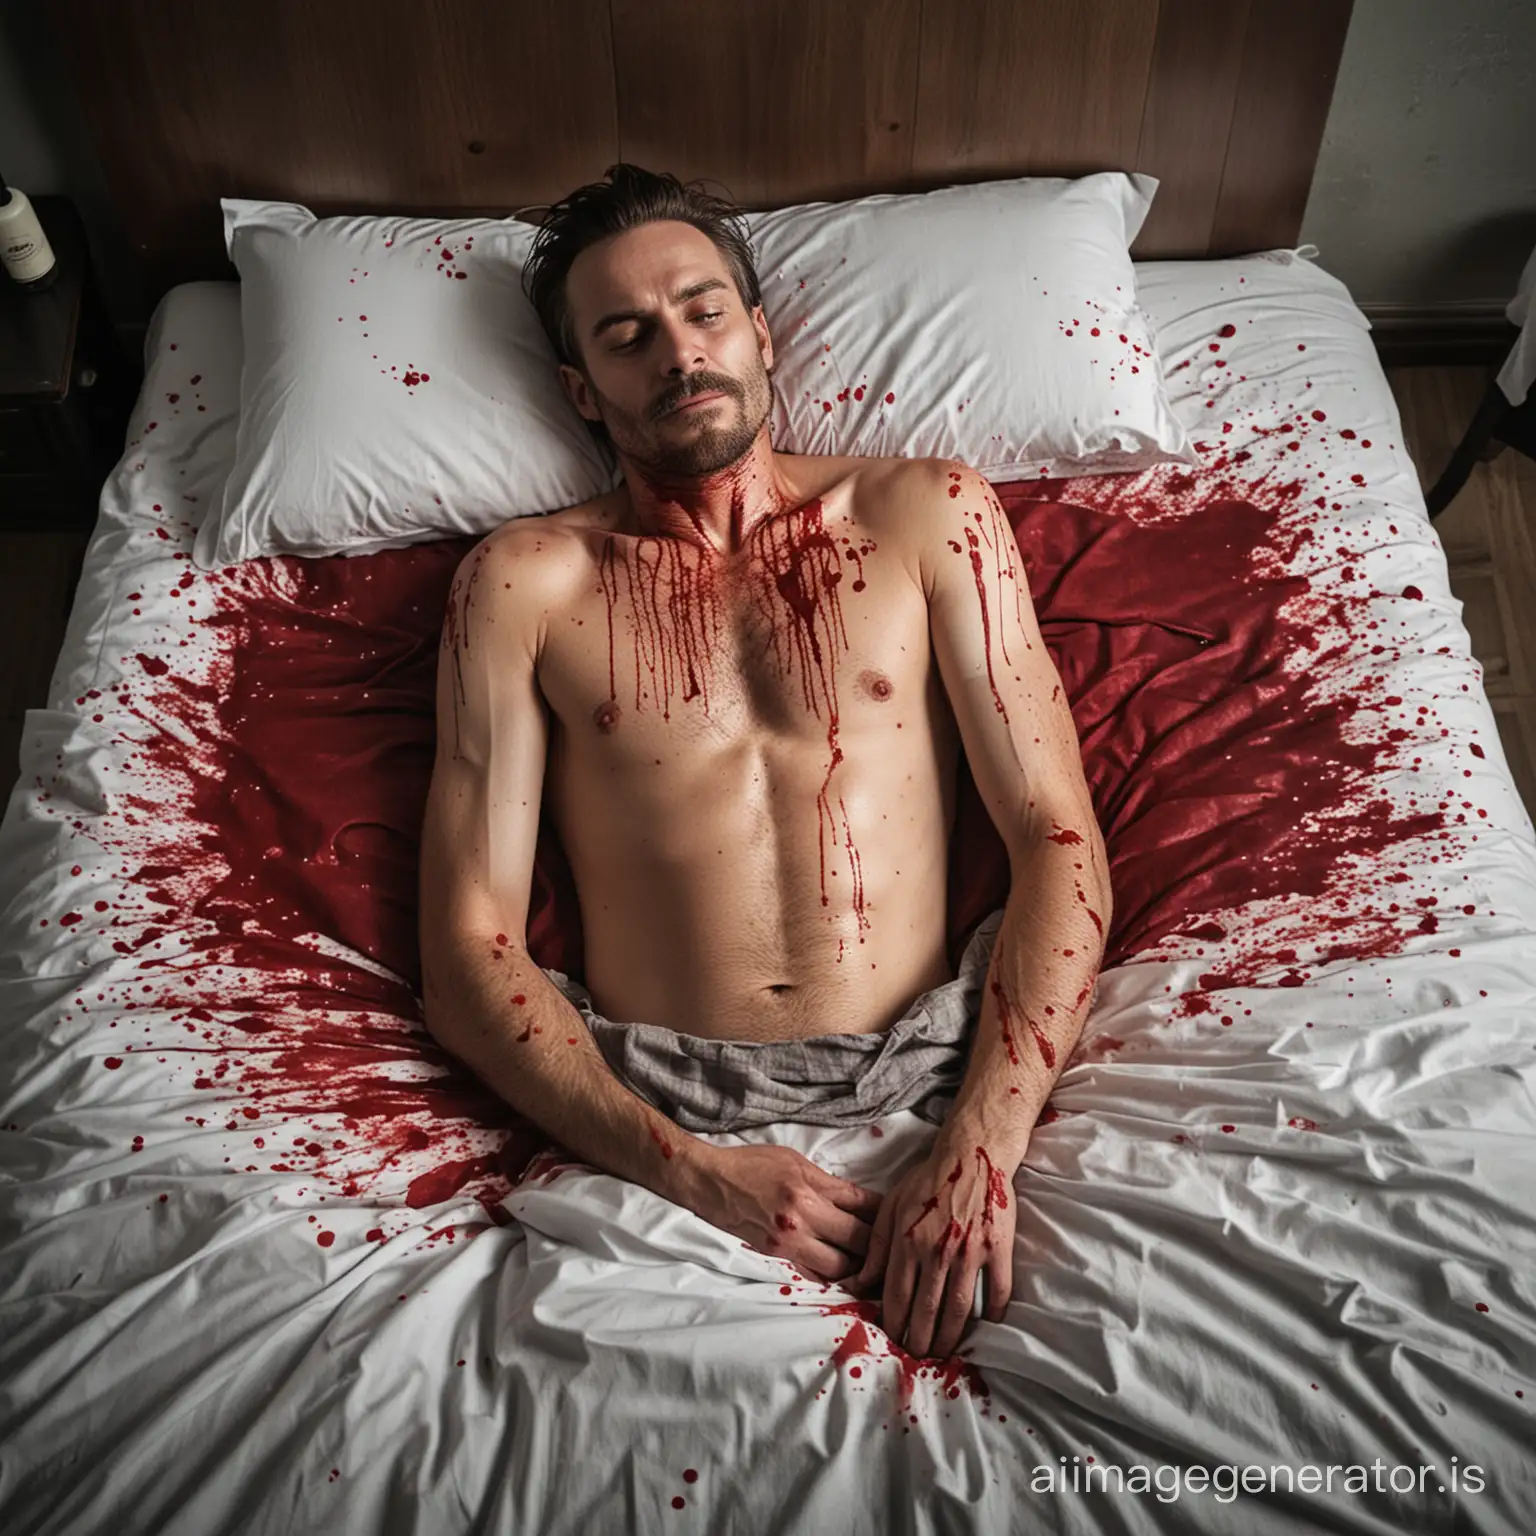 en død mand i sin seng med blod over det hele